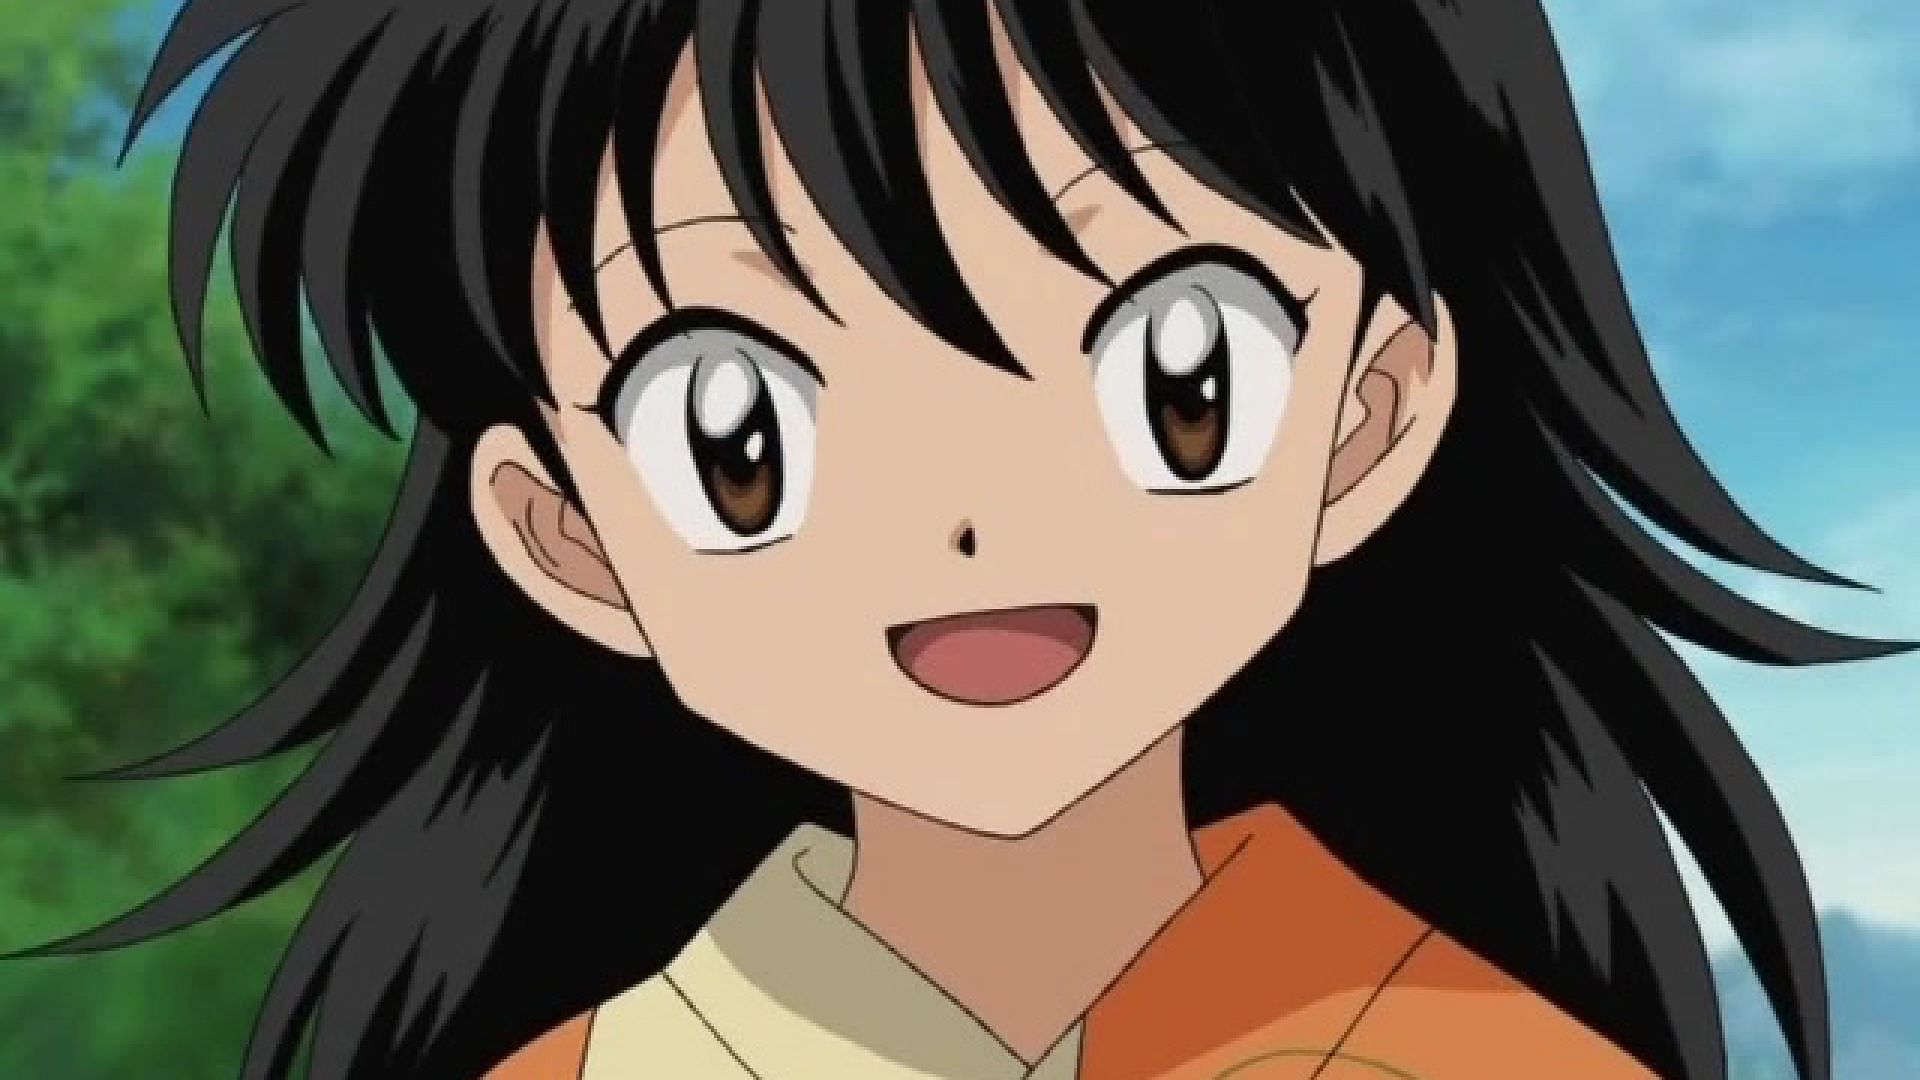 Rin from Inuyasha (Image via Inuyasha anime)